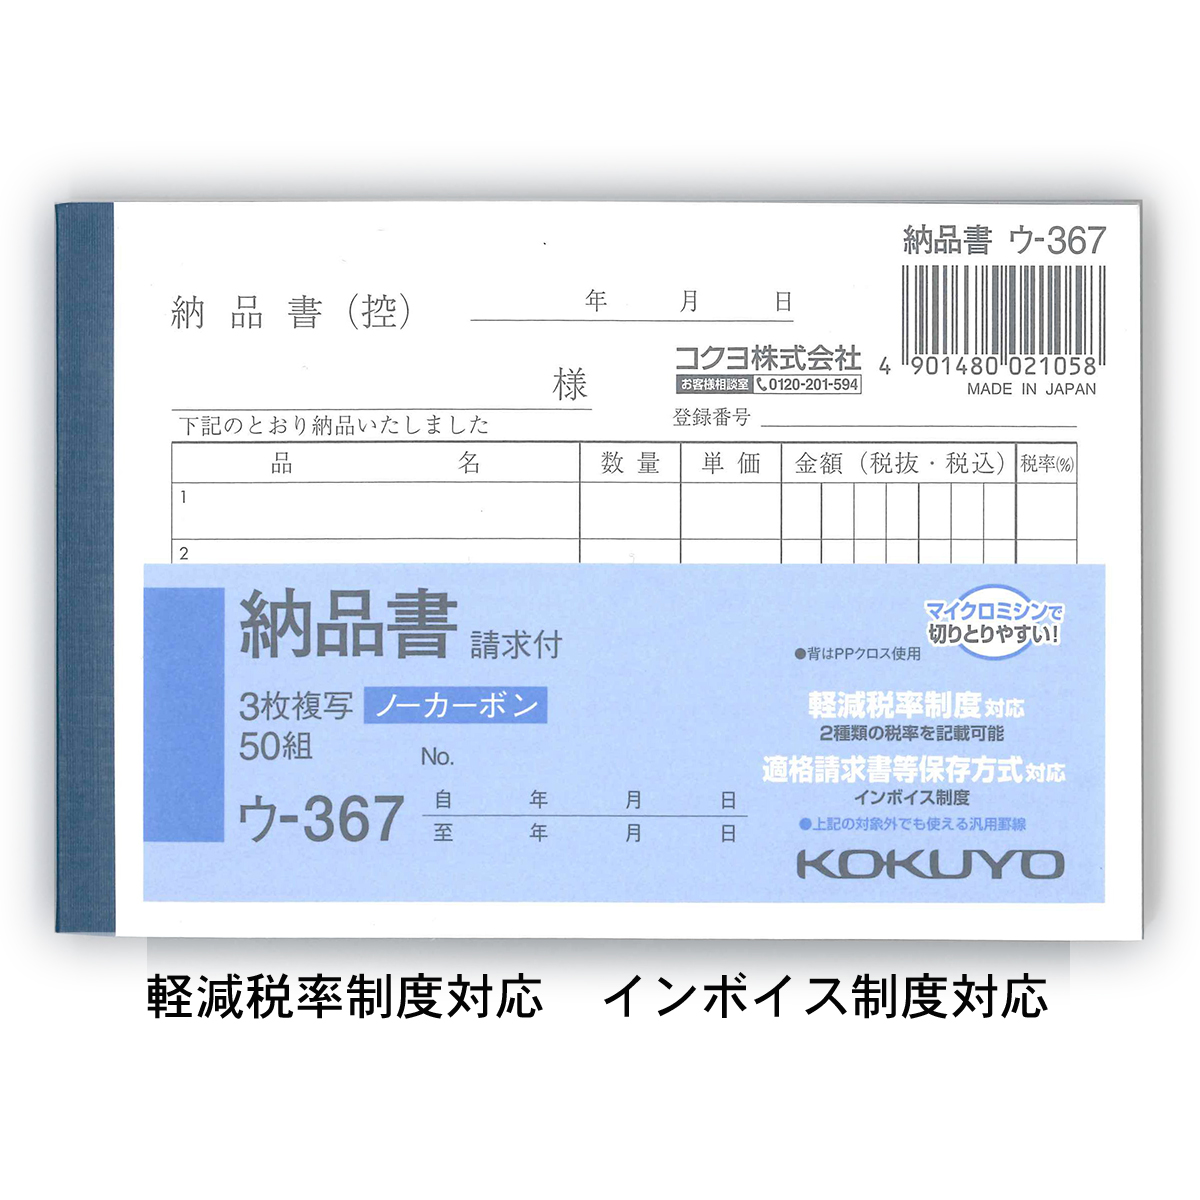 219円 激安 コクヨ 複写簿 ノーカーボン 3枚 仕切書 B6タテ 50組 ウ-330N